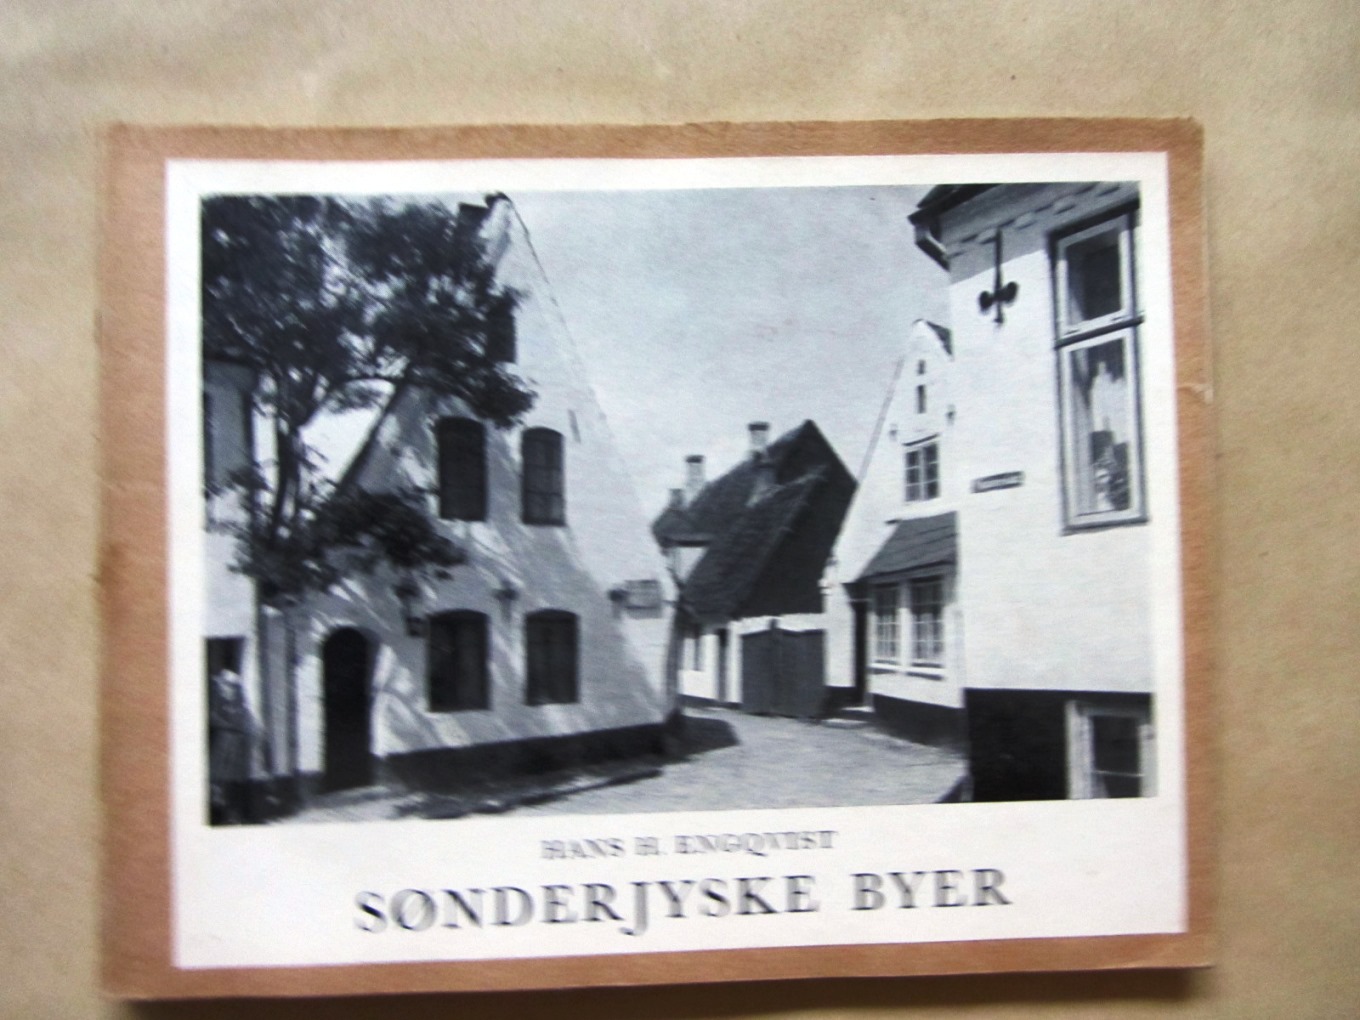 Engqvist, Hans H.:  Sønderjyske Byer. Danmarks Herligheder redigeret af Aage Roussell. 